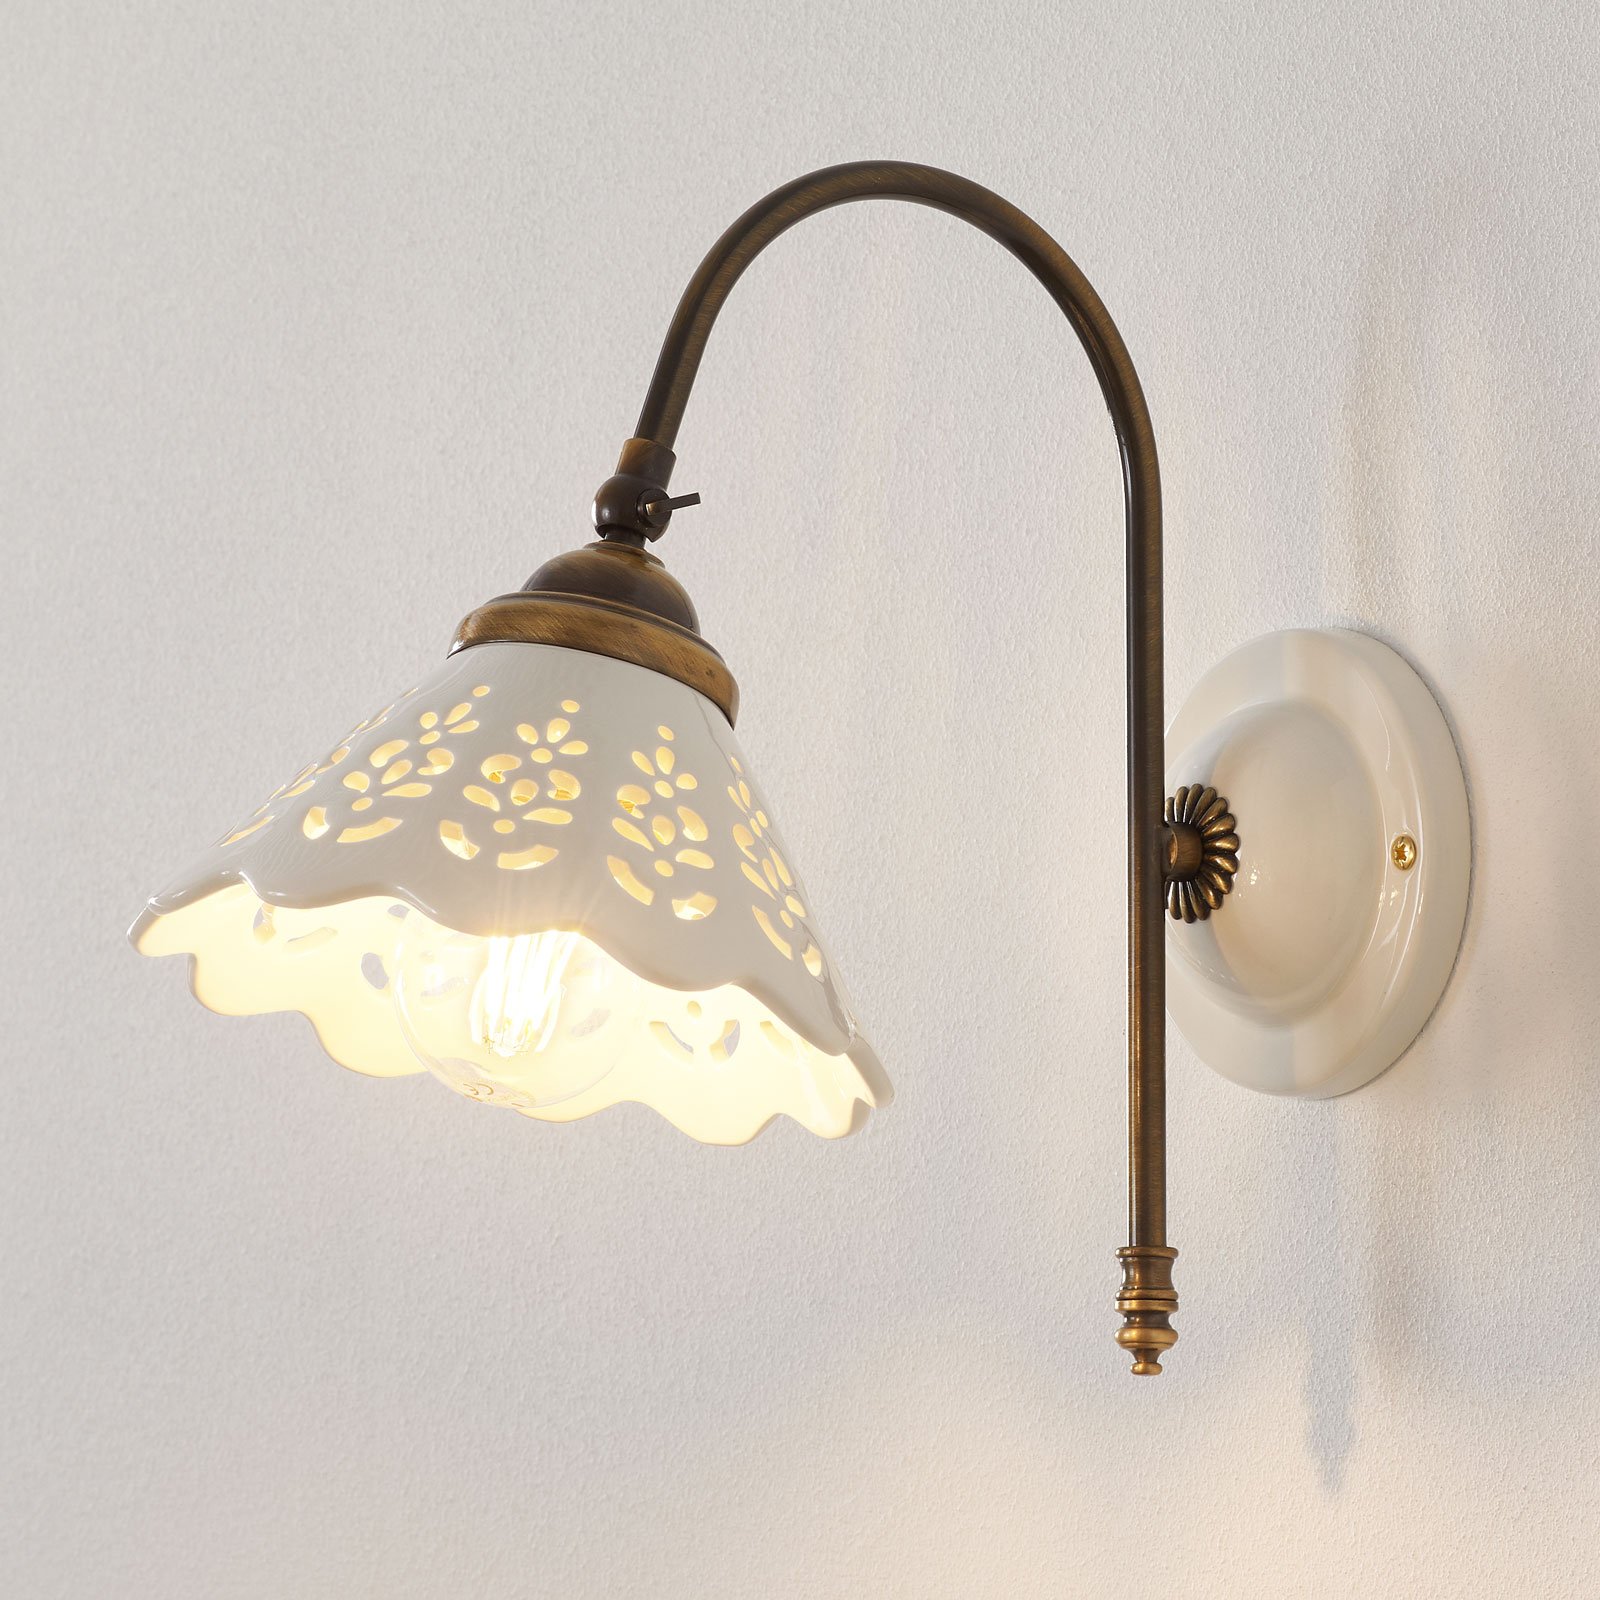 Portico - zidna svjetiljka sa zakrivljenim krakom